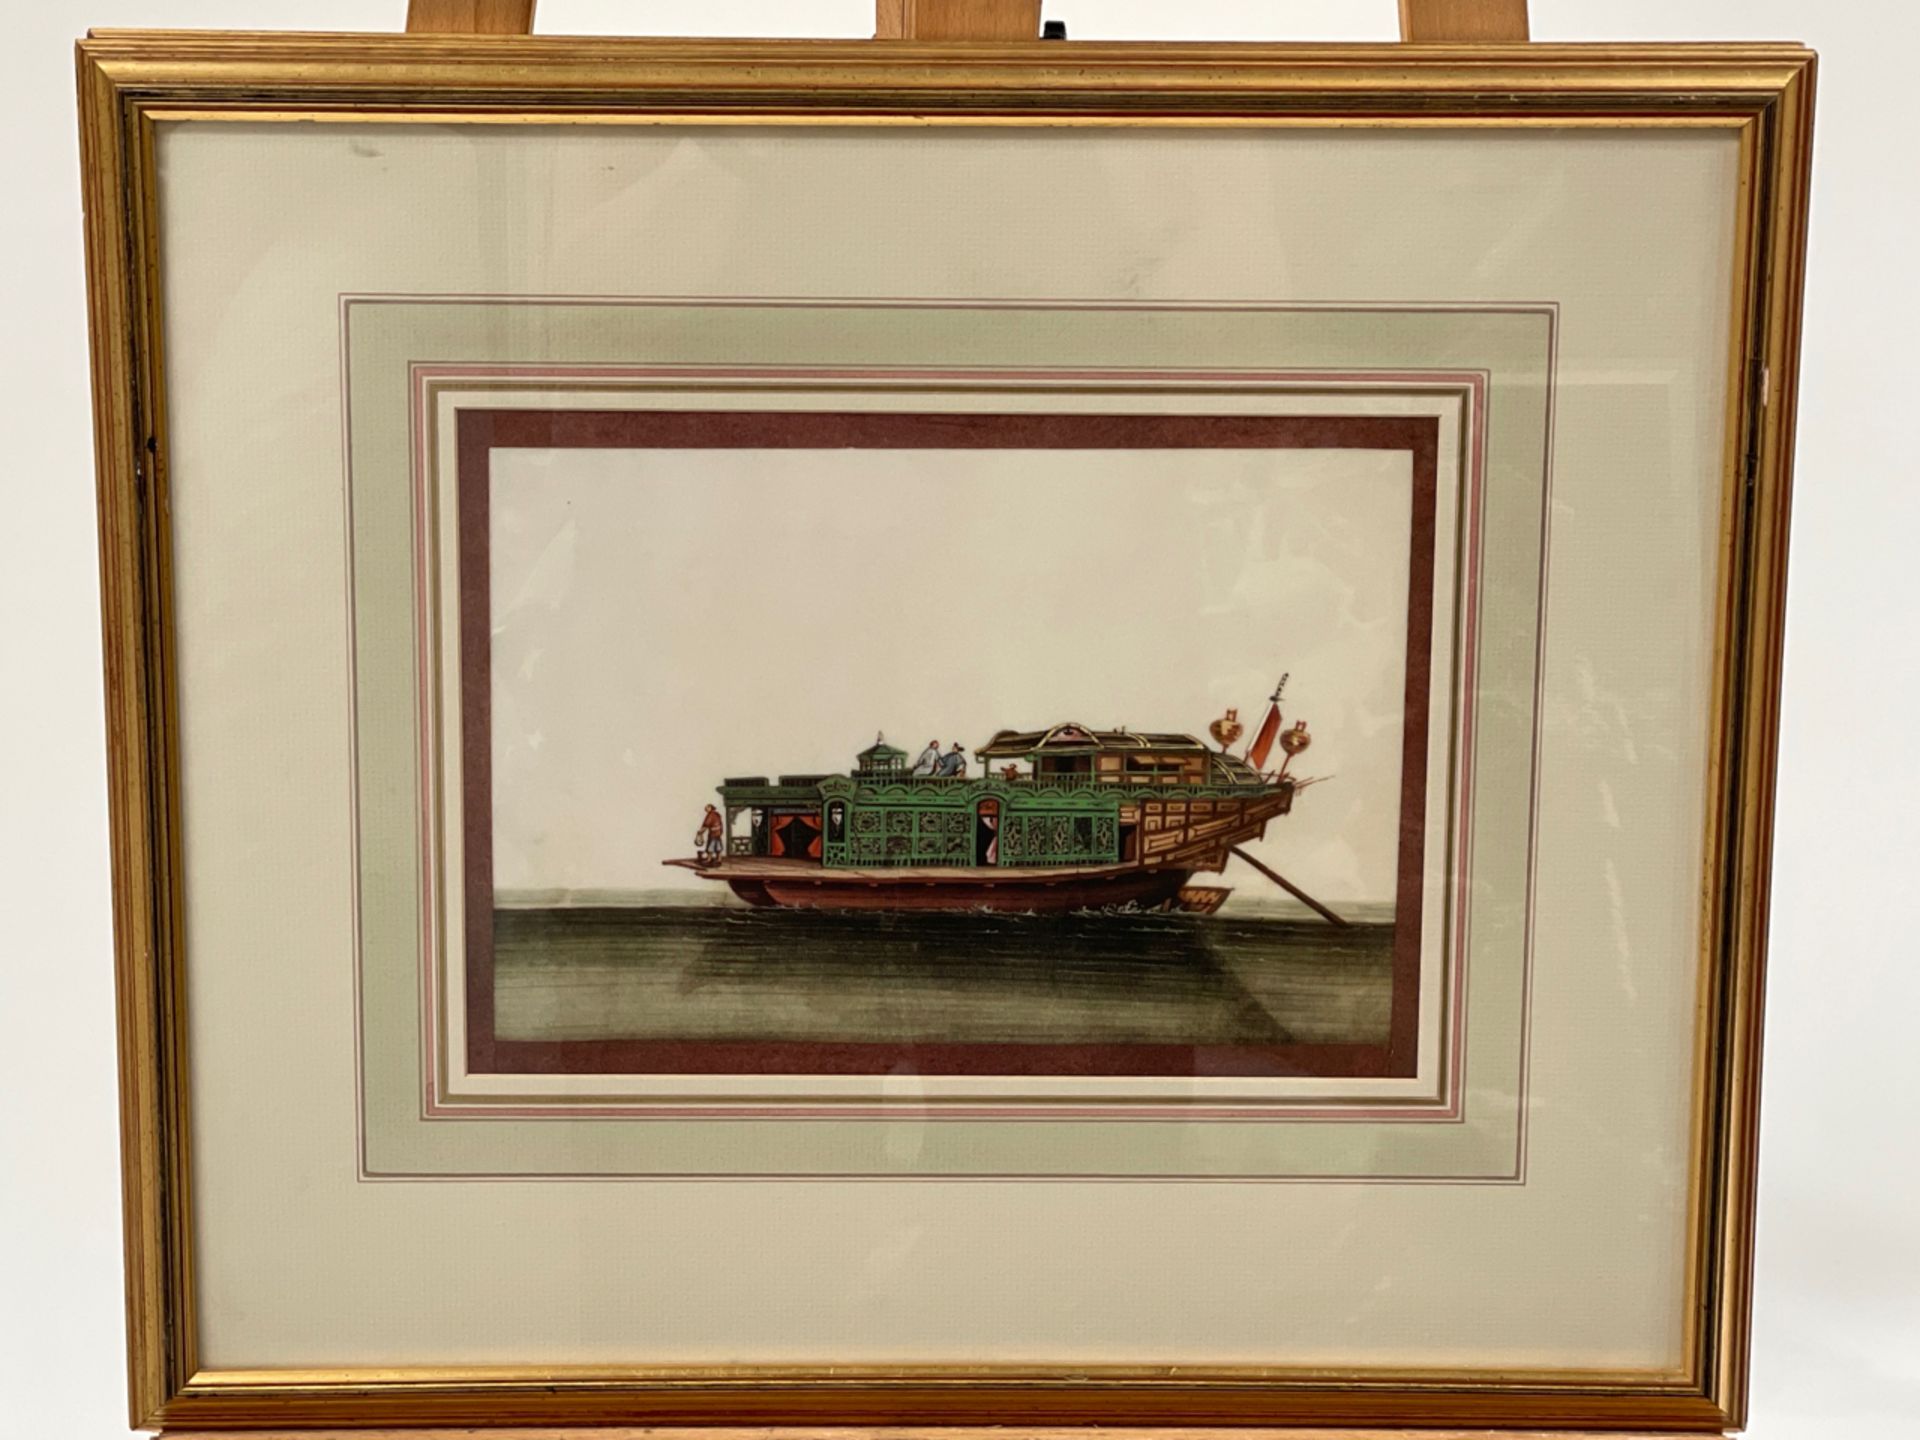 Boat Artwork Prints Set of 2 - Image 3 of 3